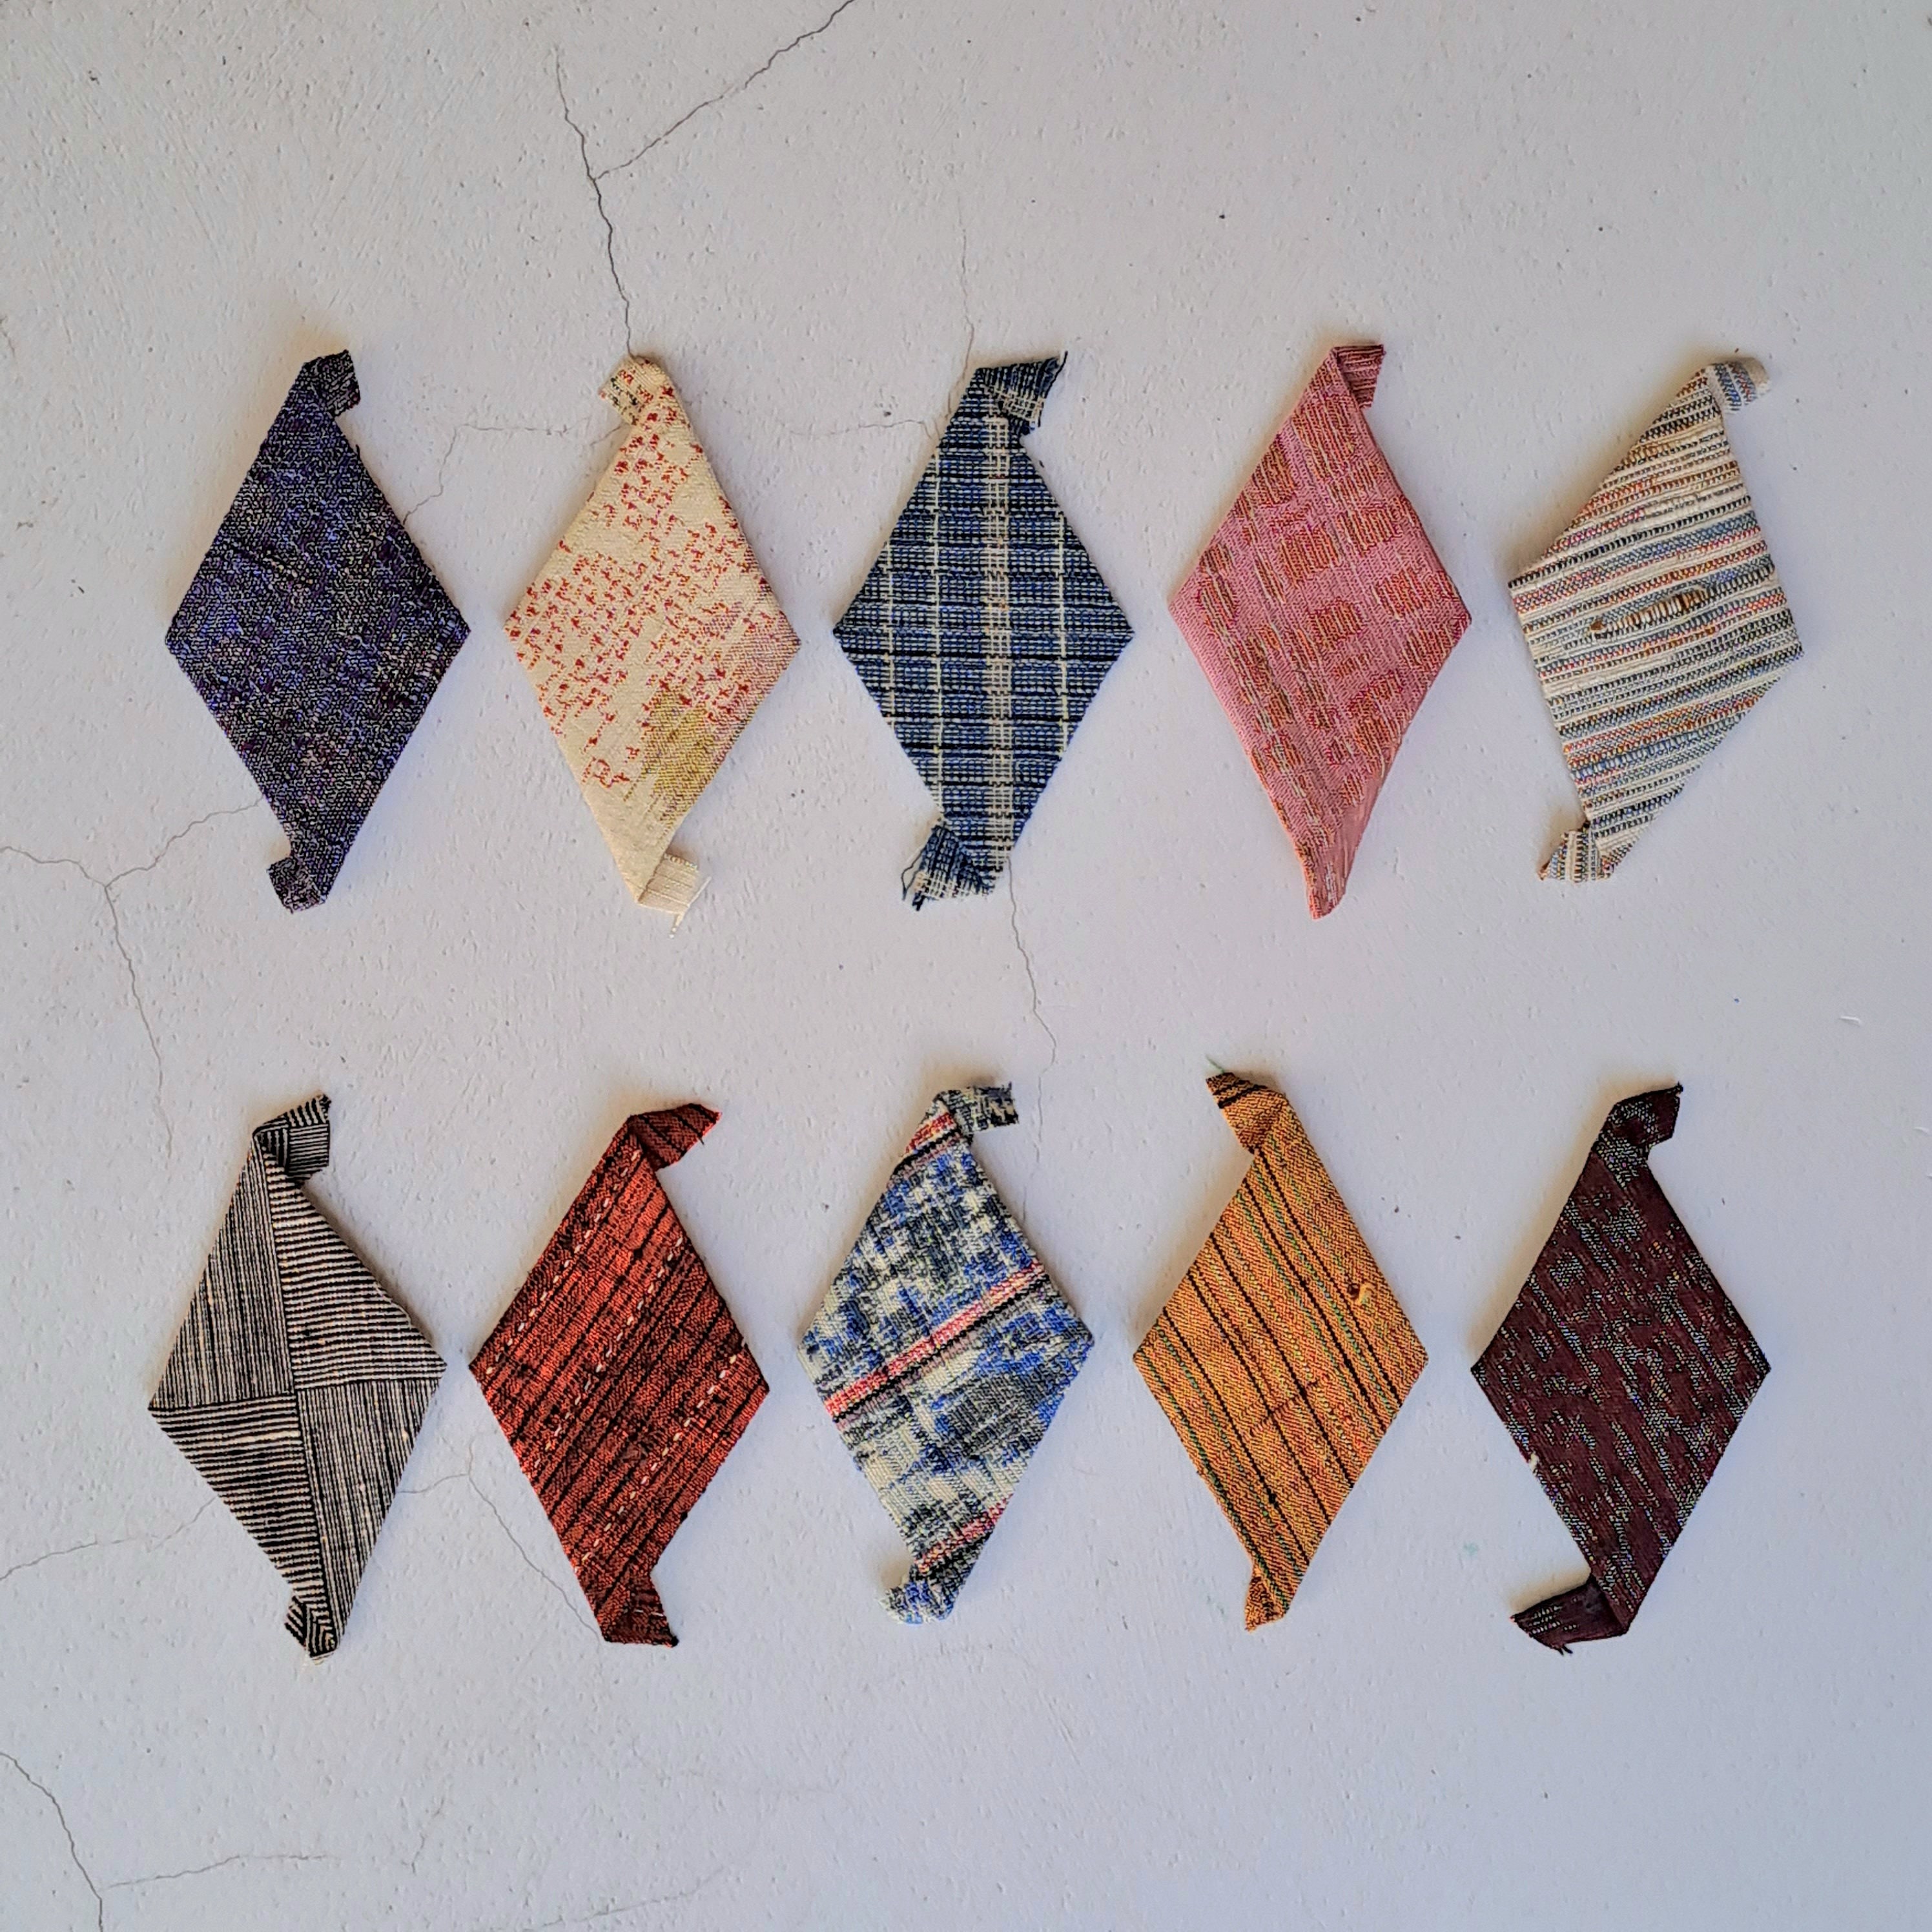 EPP Pin Cushion Kit in Vintage Japanese Fabrics Slow Stitching - Etsy UK